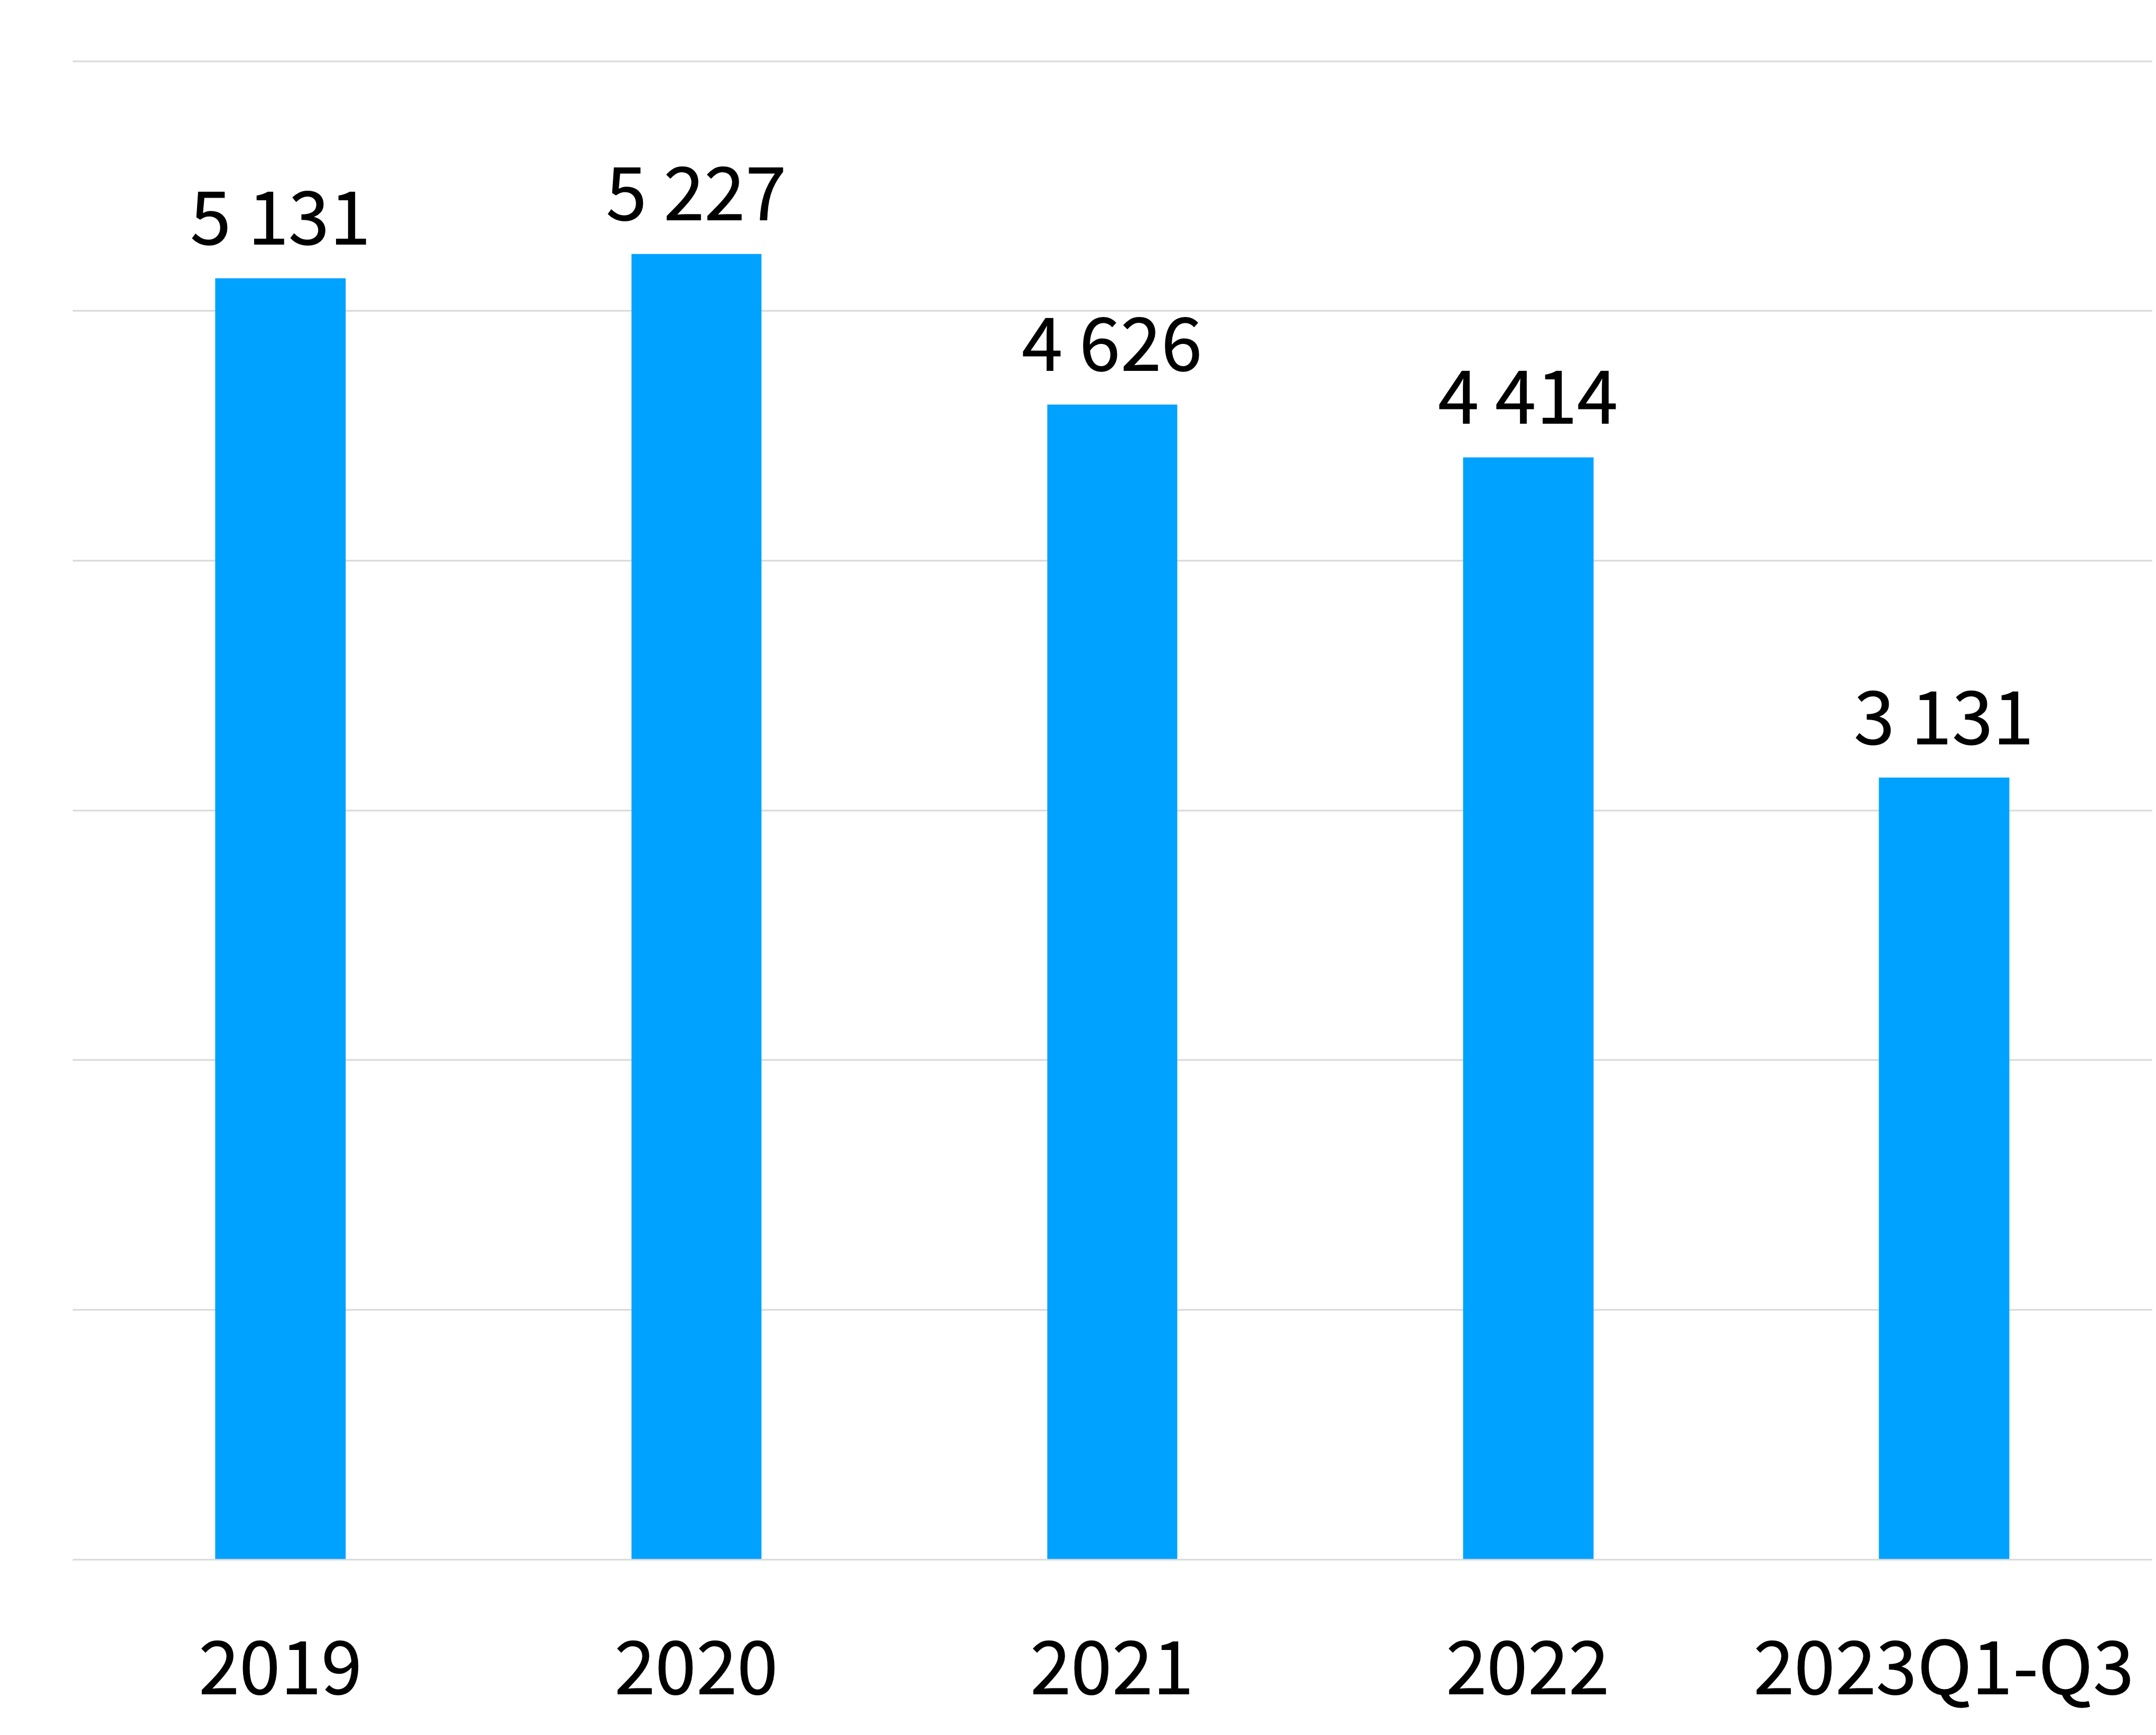 Bargraf som viser antall tusen henvendelser til kontaktsenteret fra 2019 til og med 2023. Beskrives i neste avsnitt